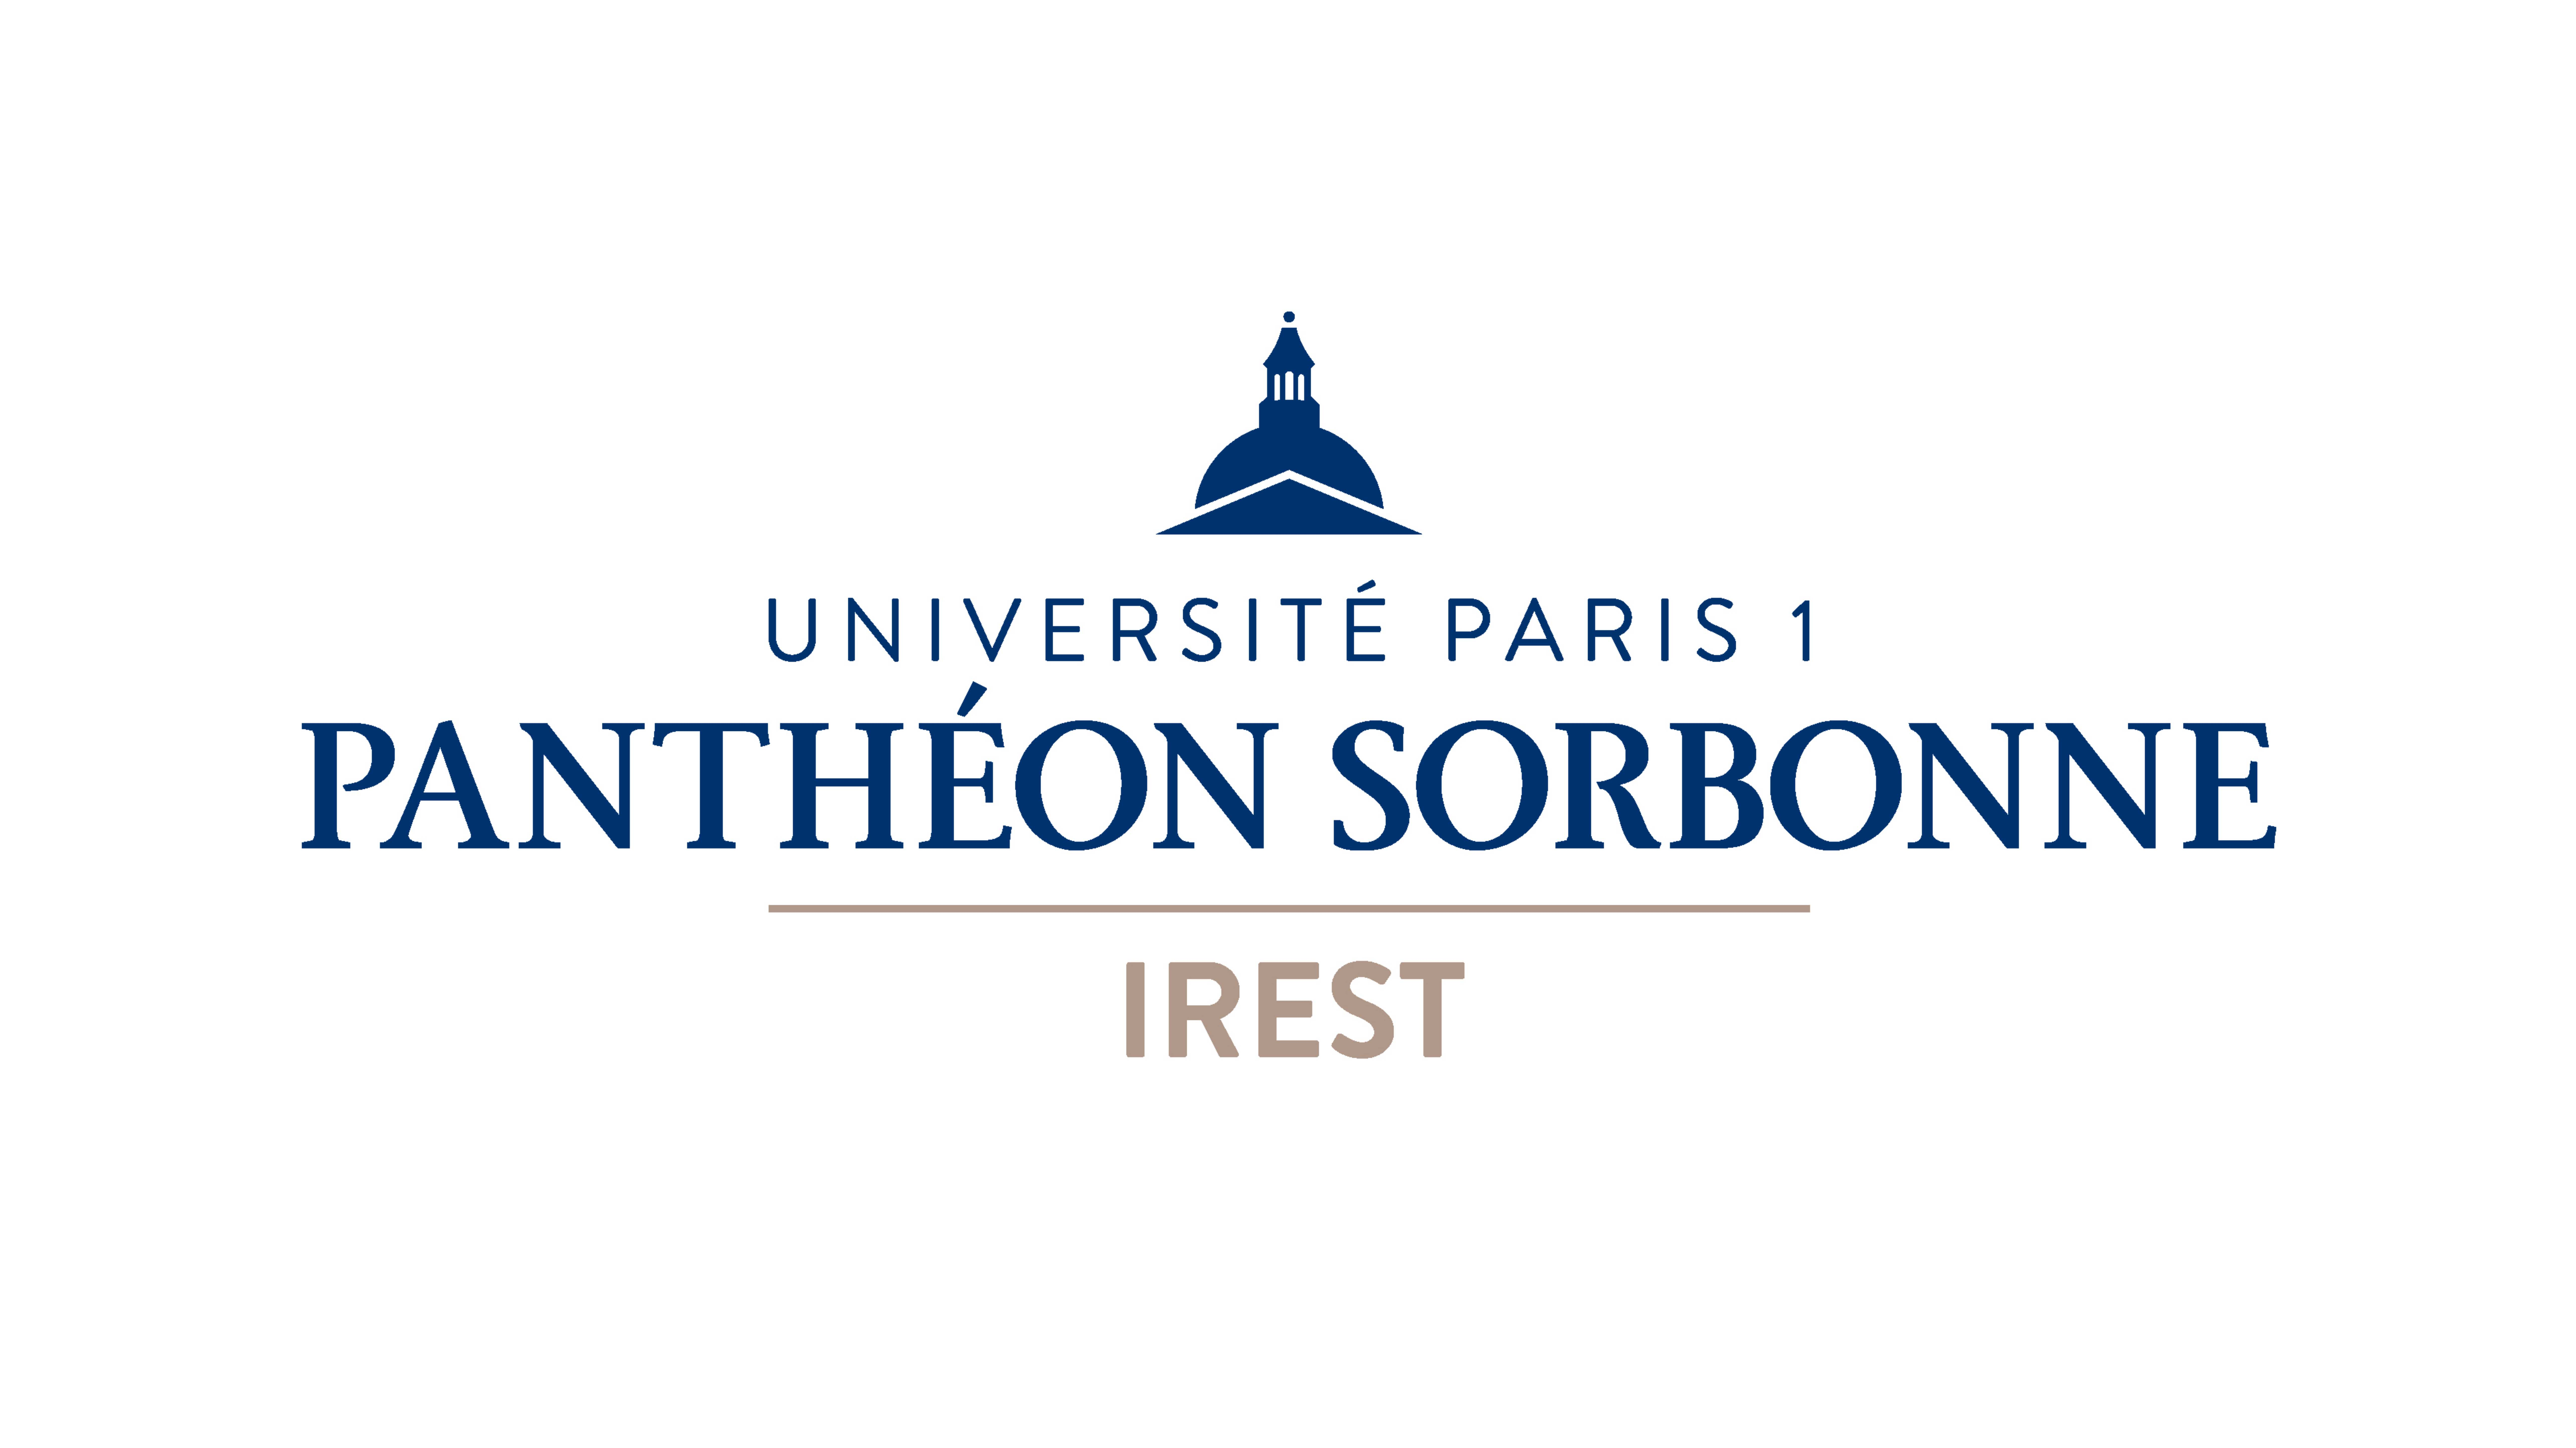 IREST, University of Paris 1 Panthéon-Sorbonne